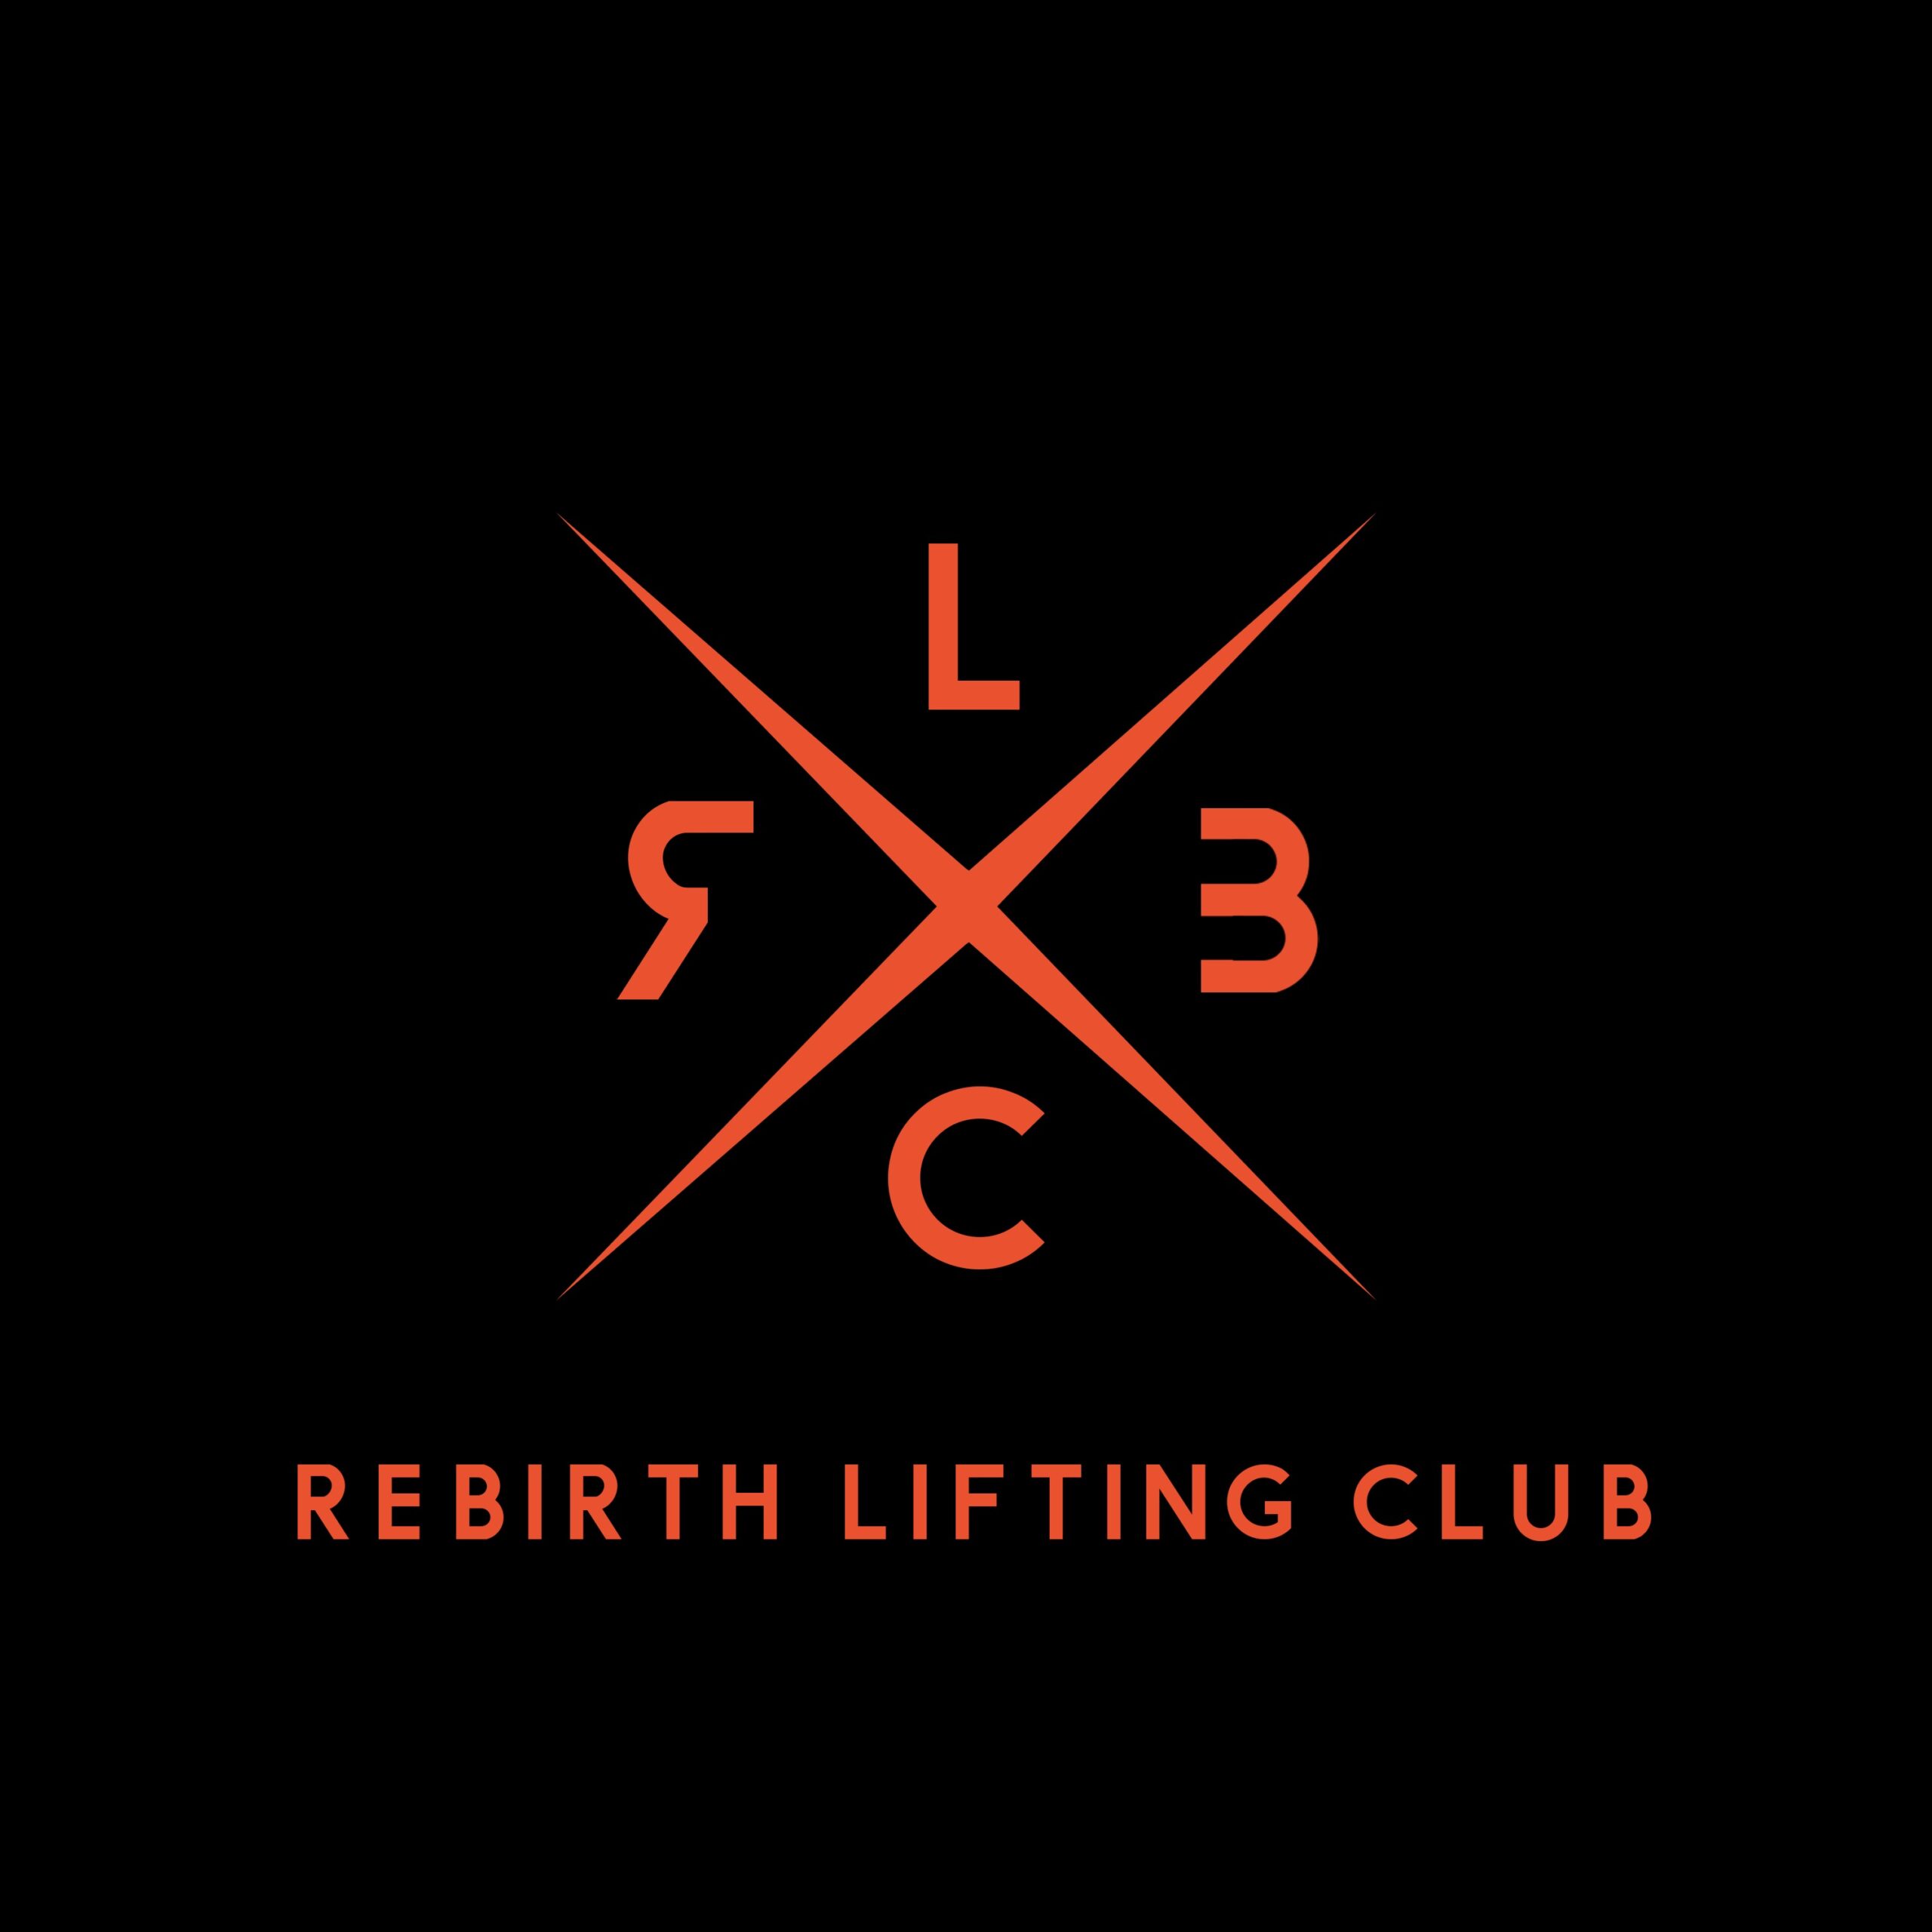 Rebirth Lifting Club